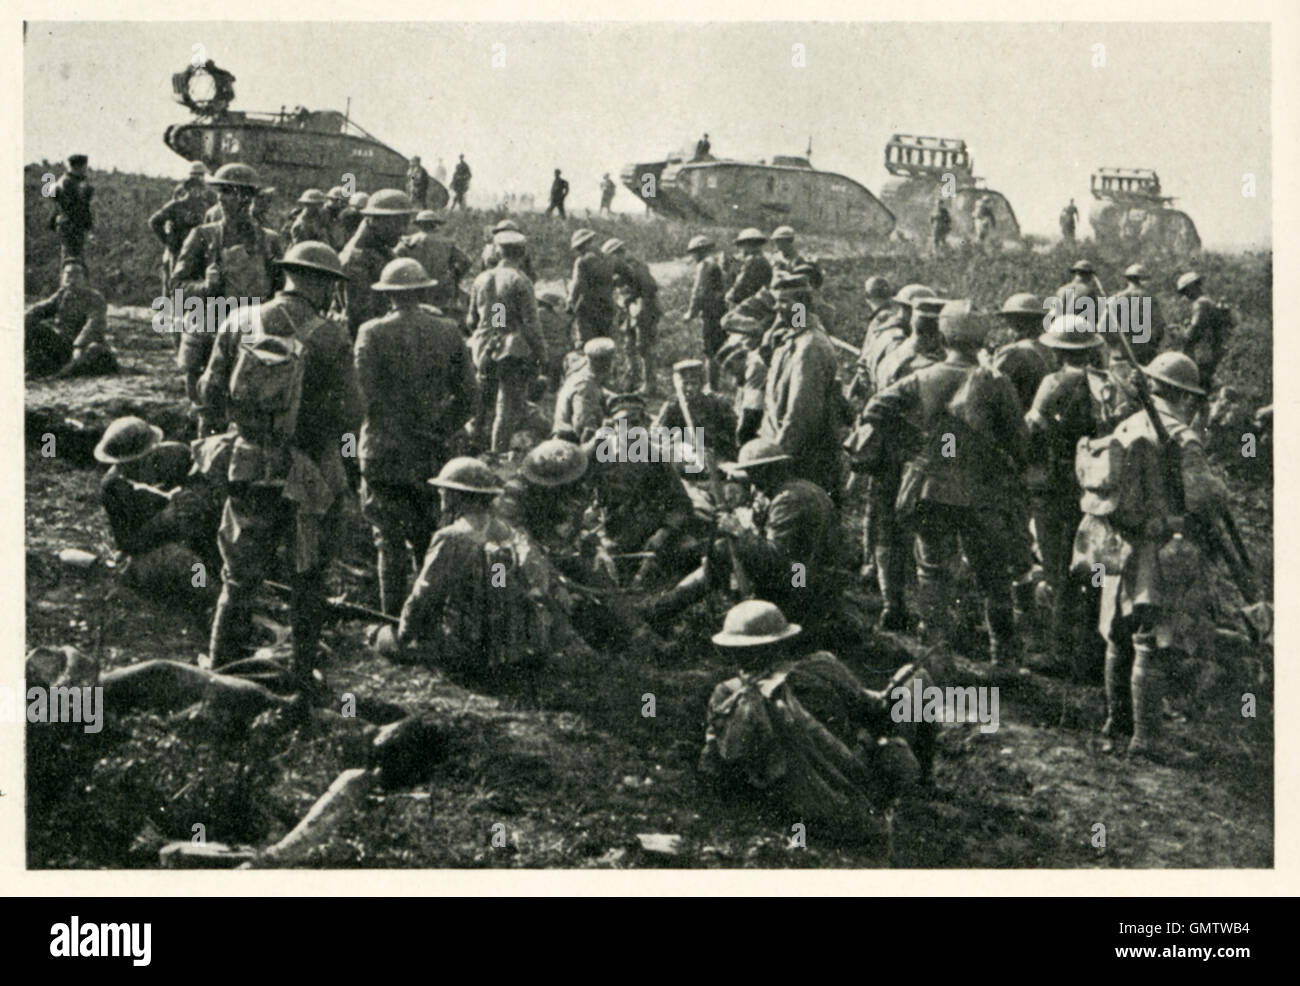 Déplacer des réservoirs jusqu'à la ligne Hindenberg, 1918 Photographie de bataille de chars britanniques équipés avec des lits dans la dernière avance des alliés de la Grande Guerre Banque D'Images